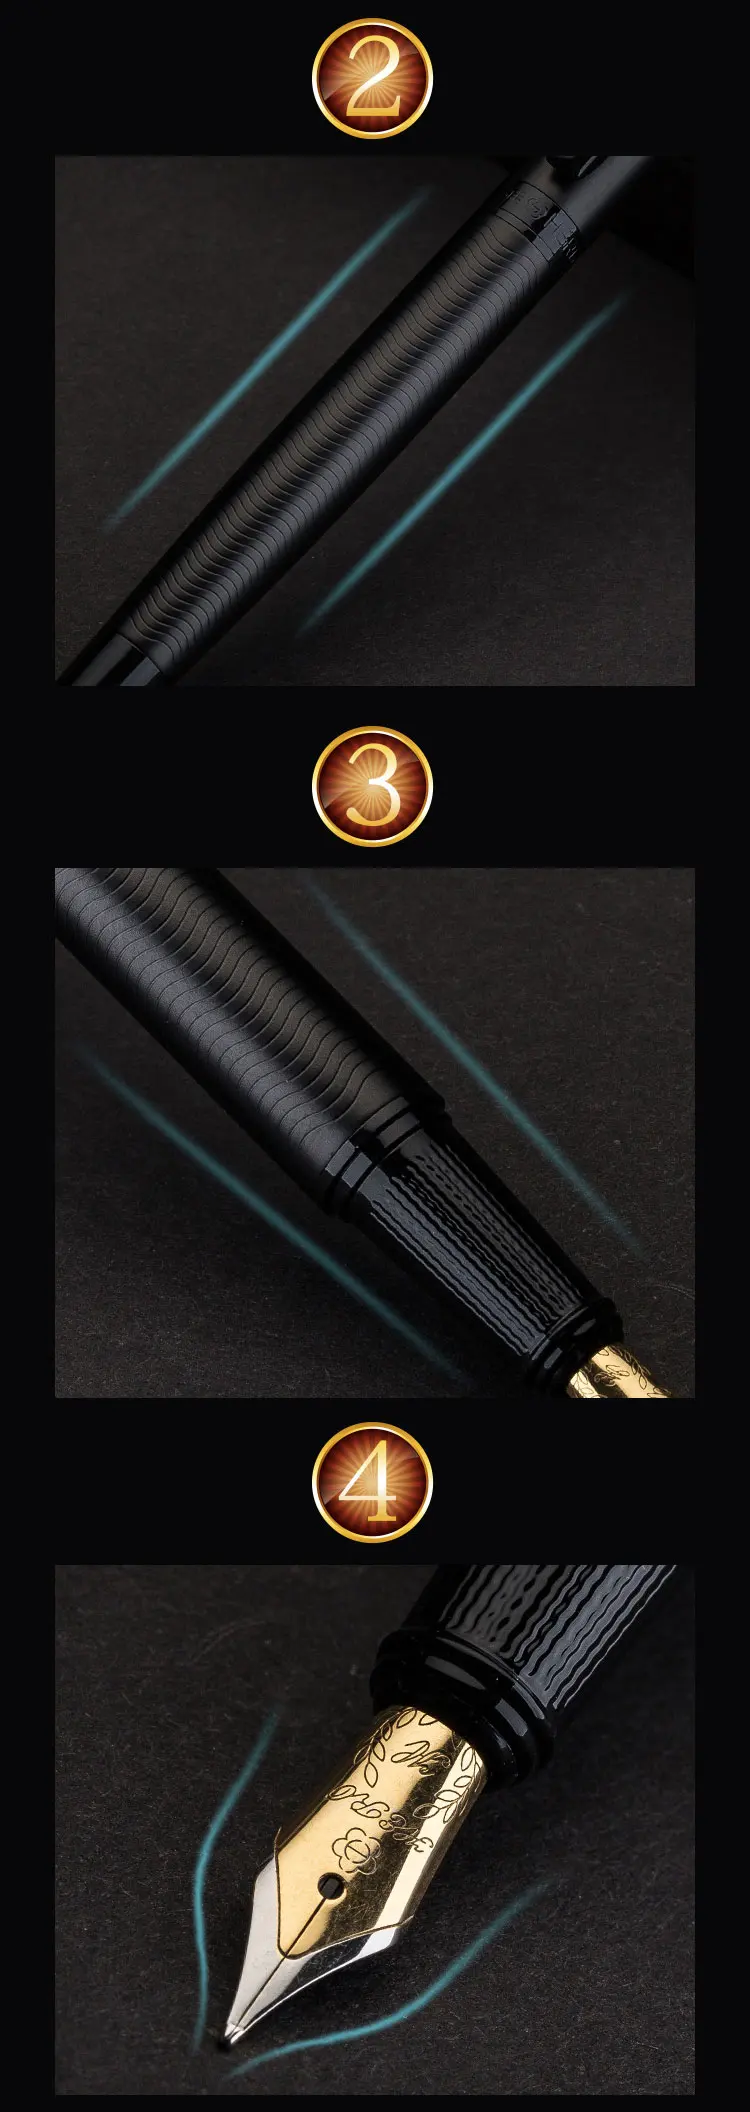 Полностью Металлическая матовая черная перьевая ручка Iraurita 0,5 мм чернильные ручки бизнес-офис caneta tinteiro канцелярские принадлежности подарок 1037